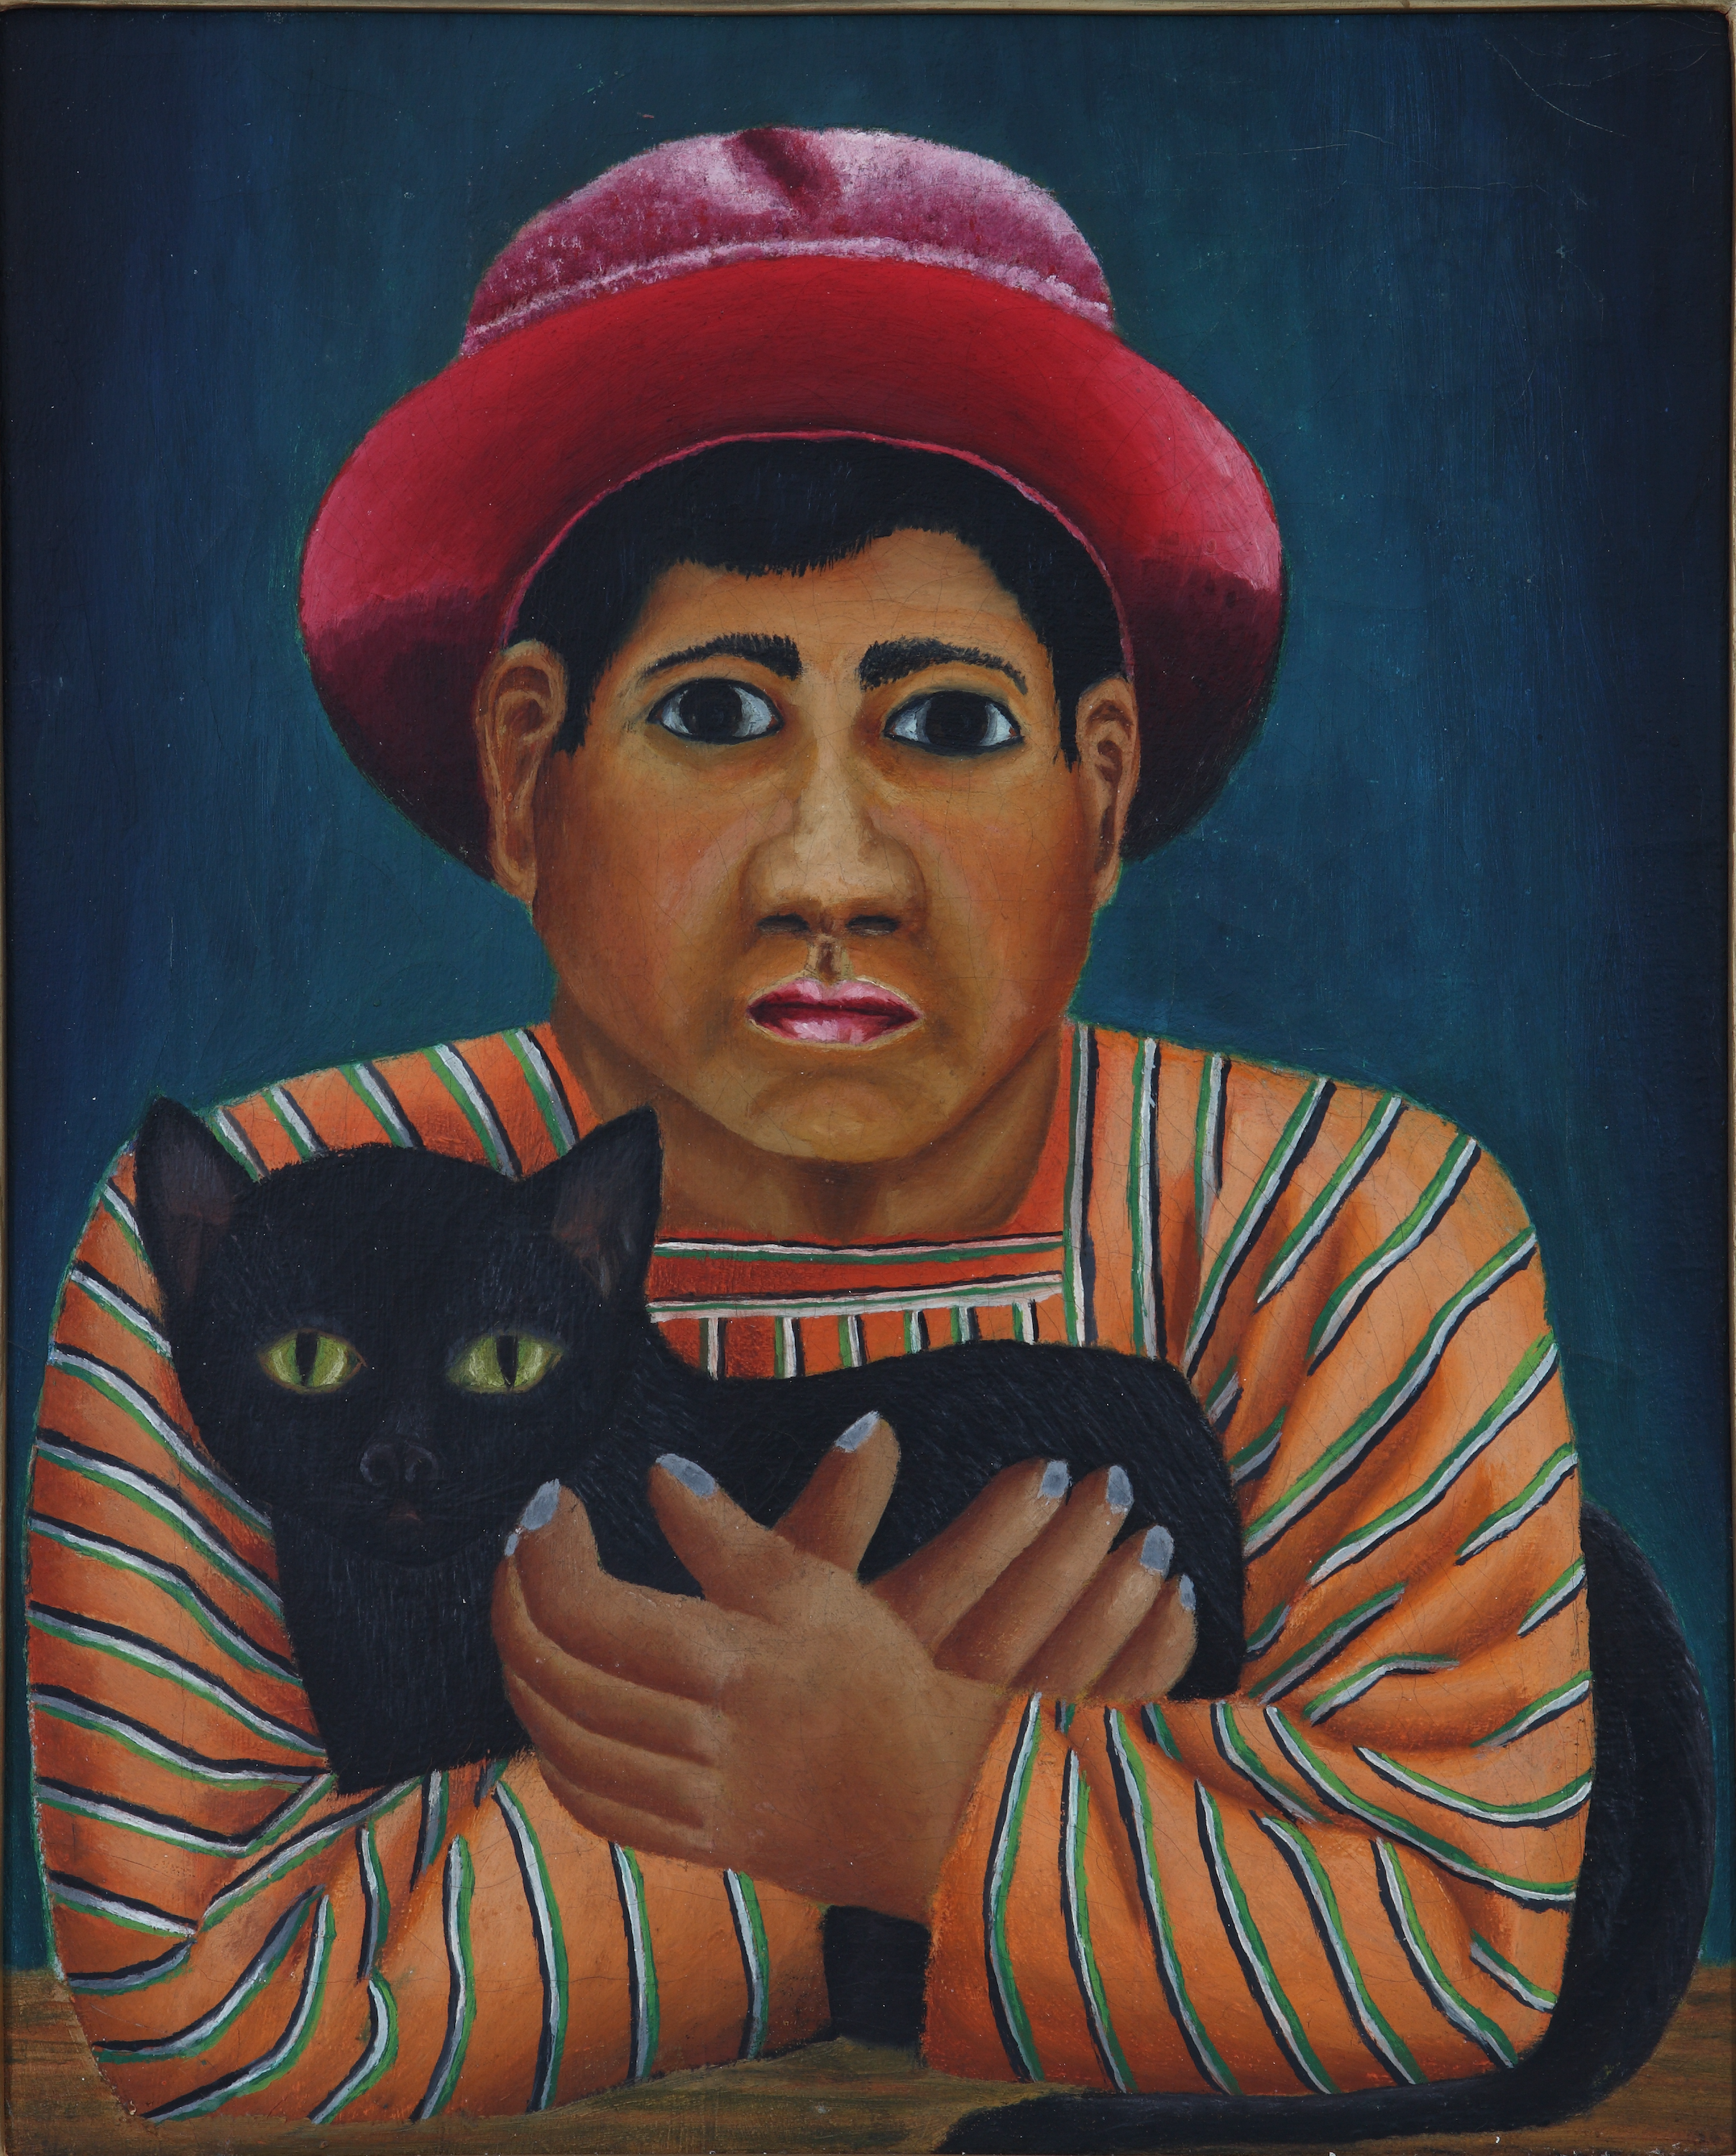 黑猫 by 费尔南多 卡斯蒂略 - 约1929年 - 43.6 x 36厘米 布莱斯坦收藏馆